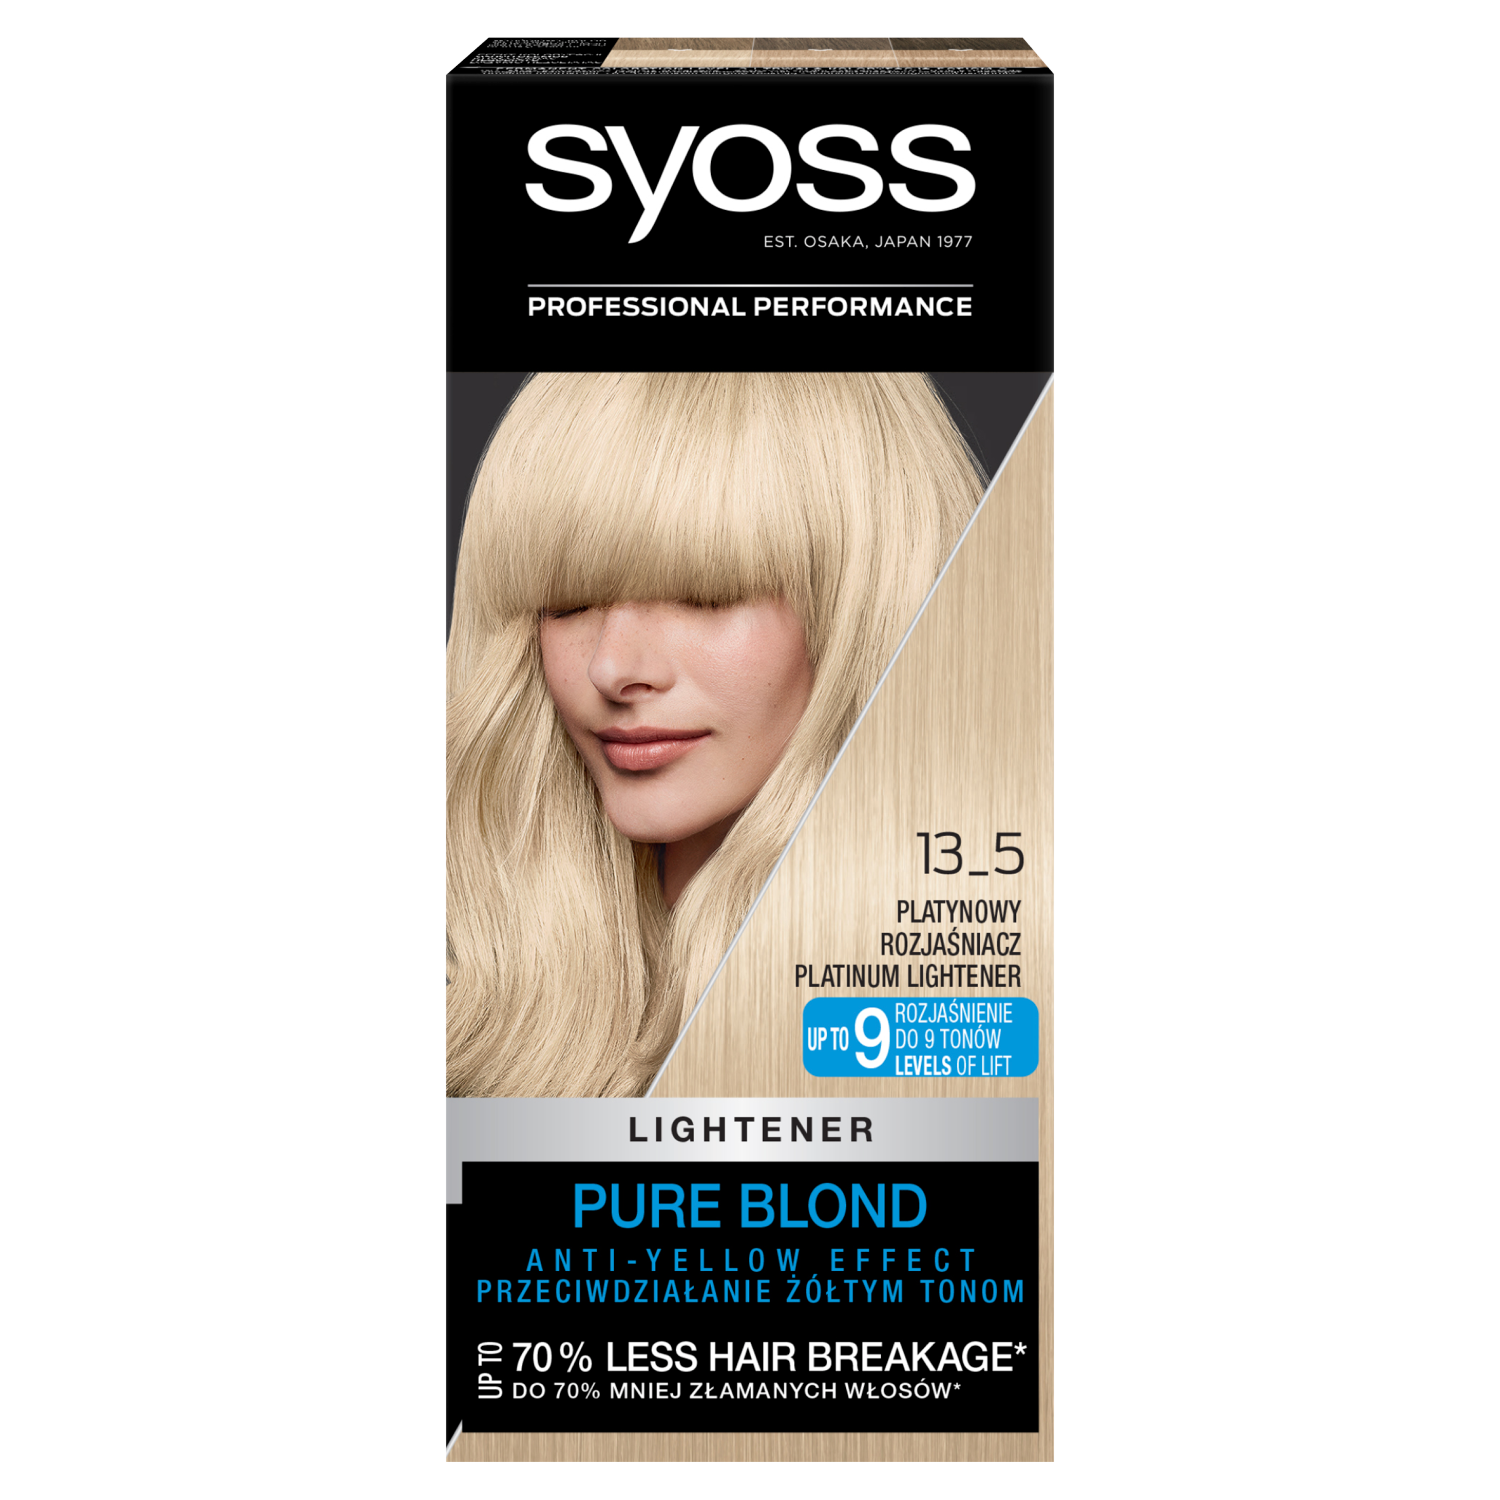 Осветляющая краска для волос отзывы. Syoss платиновый осветлитель 5. Syoss платиновый осветлитель 13-5. Syoss 12-0 ультра осветлитель. Краска сьес осветлитель 13-5.